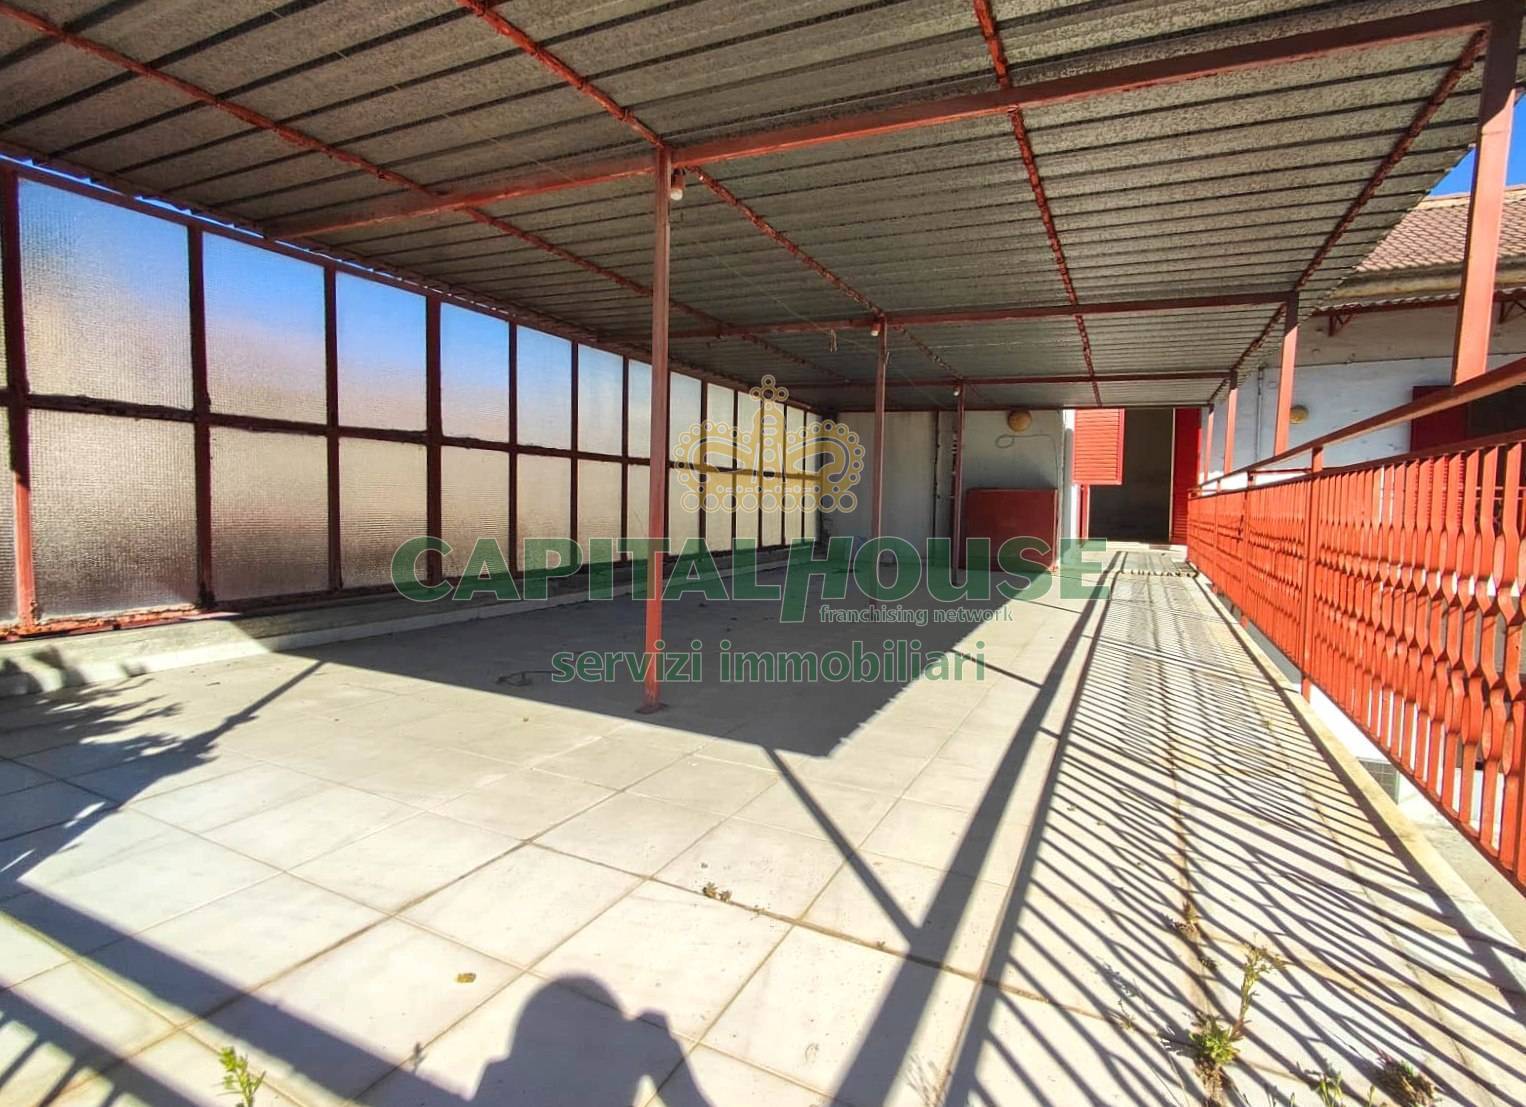 Appartamento in vendita a San Prisco, 3 locali, zona Località: ZonaCentrale, prezzo € 60.000 | PortaleAgenzieImmobiliari.it